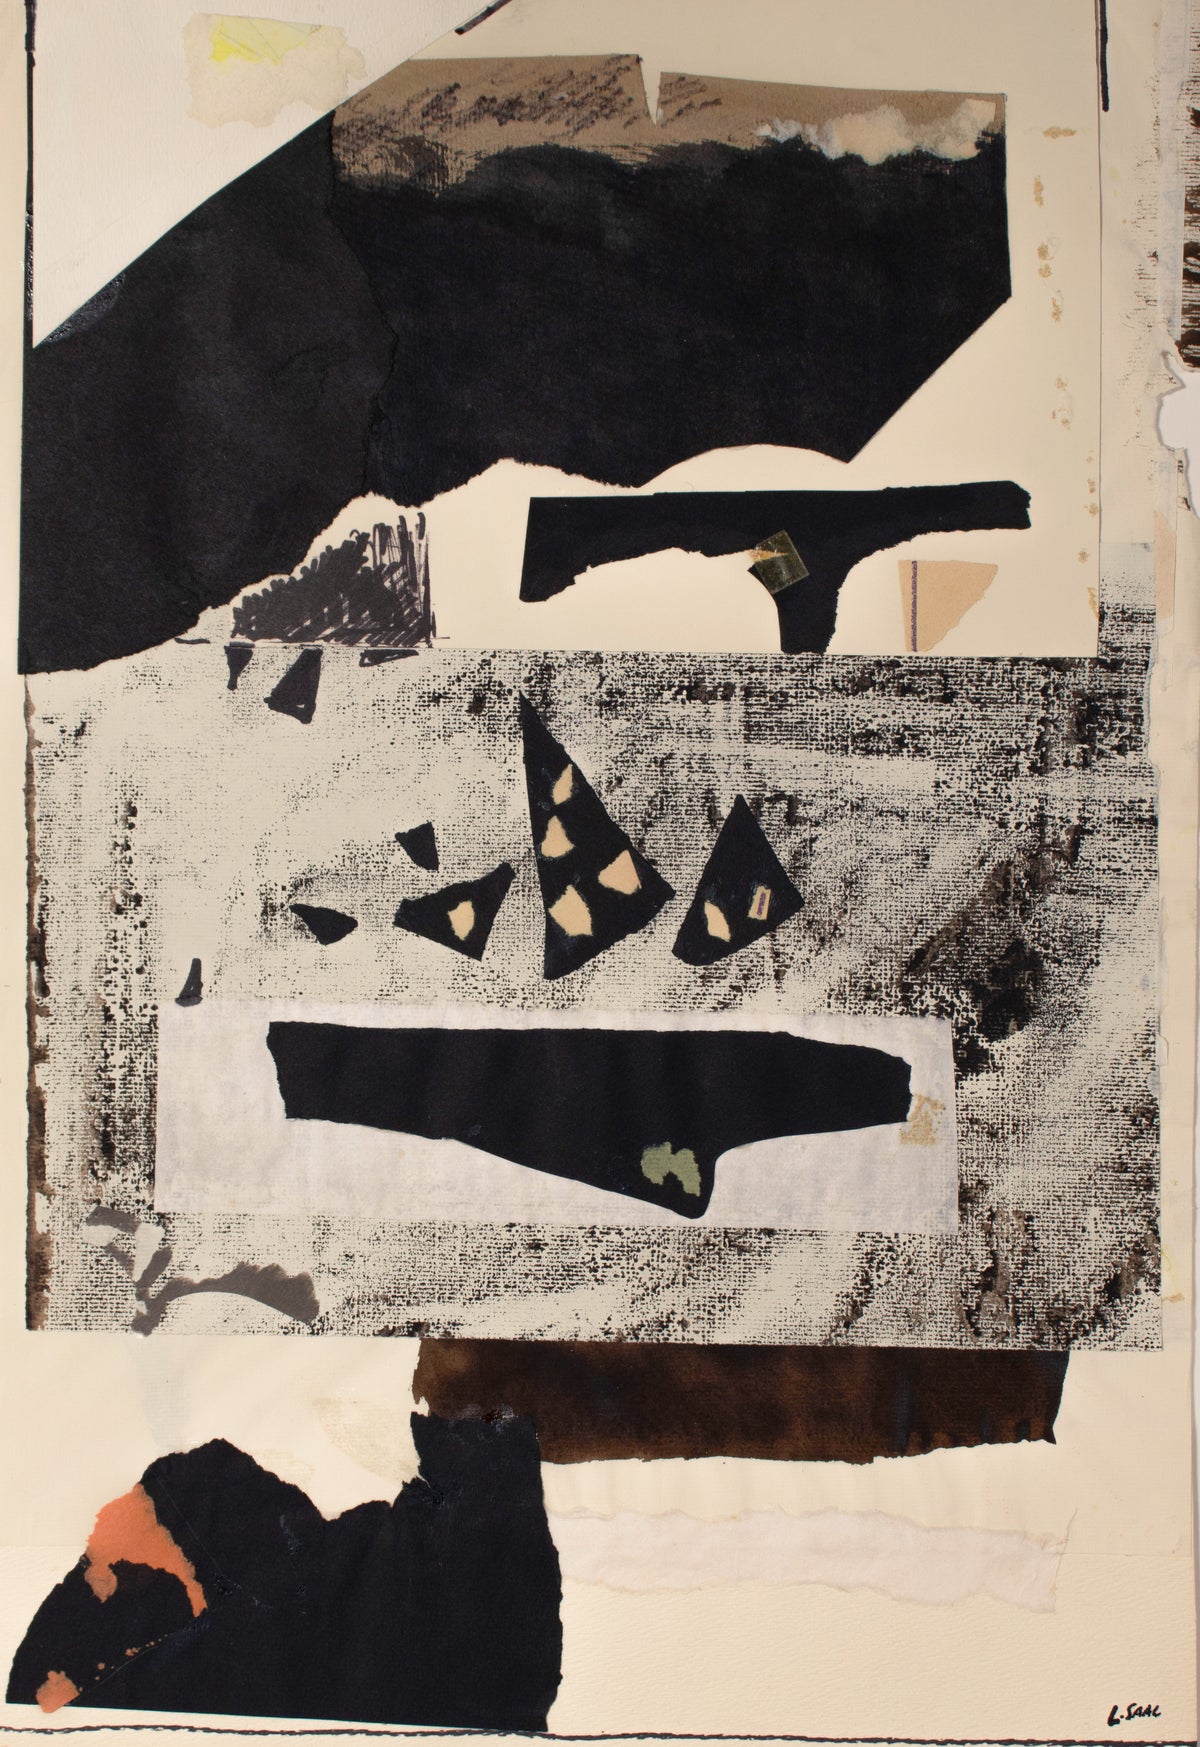 Abstract Composition &lt;br&gt;1974 Collage &lt;br&gt;&lt;br&gt;#C1808